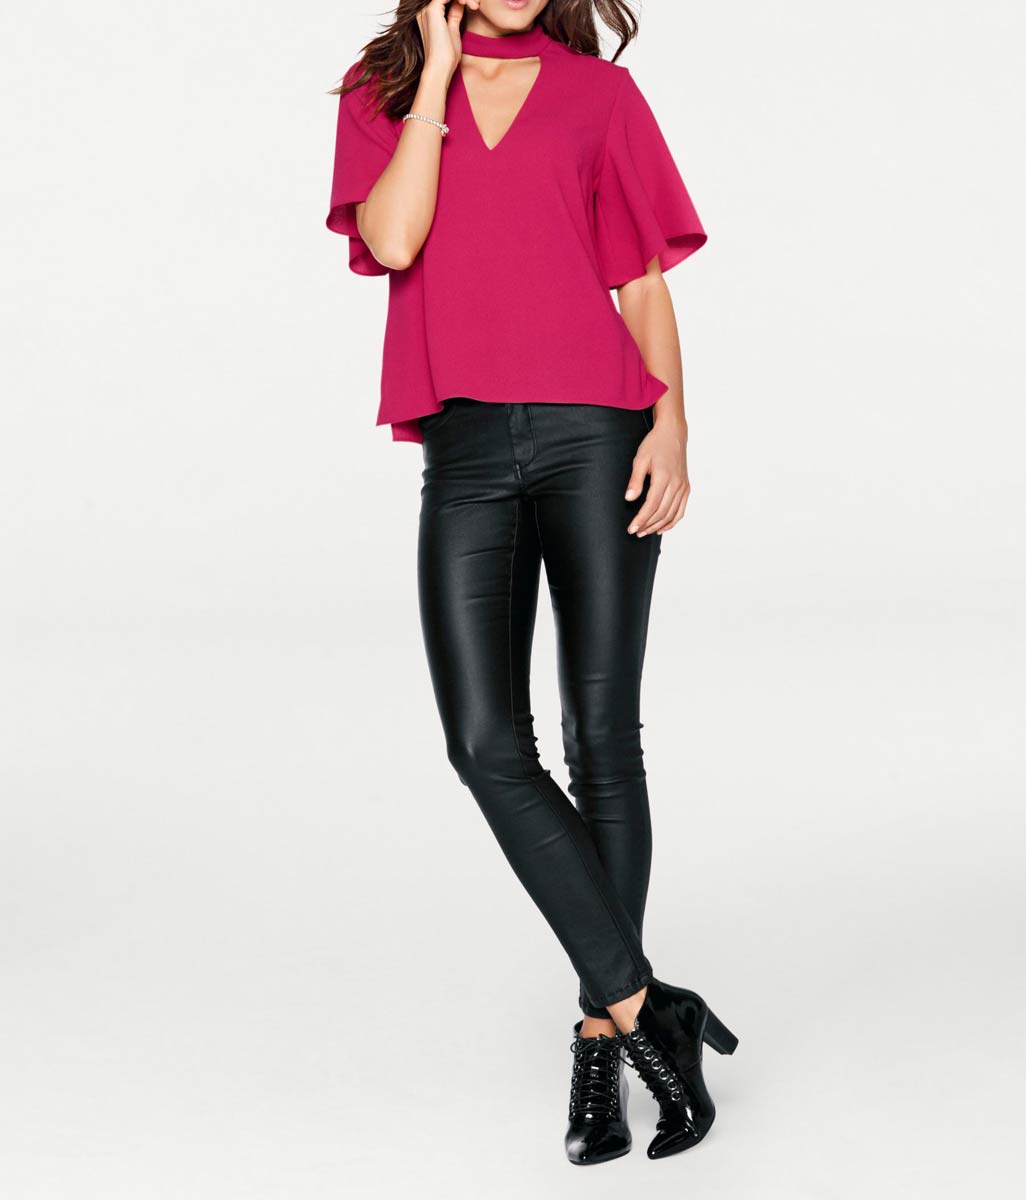 Ashley Brooke Damen Designer-Bluse mit Cut-Out, pink